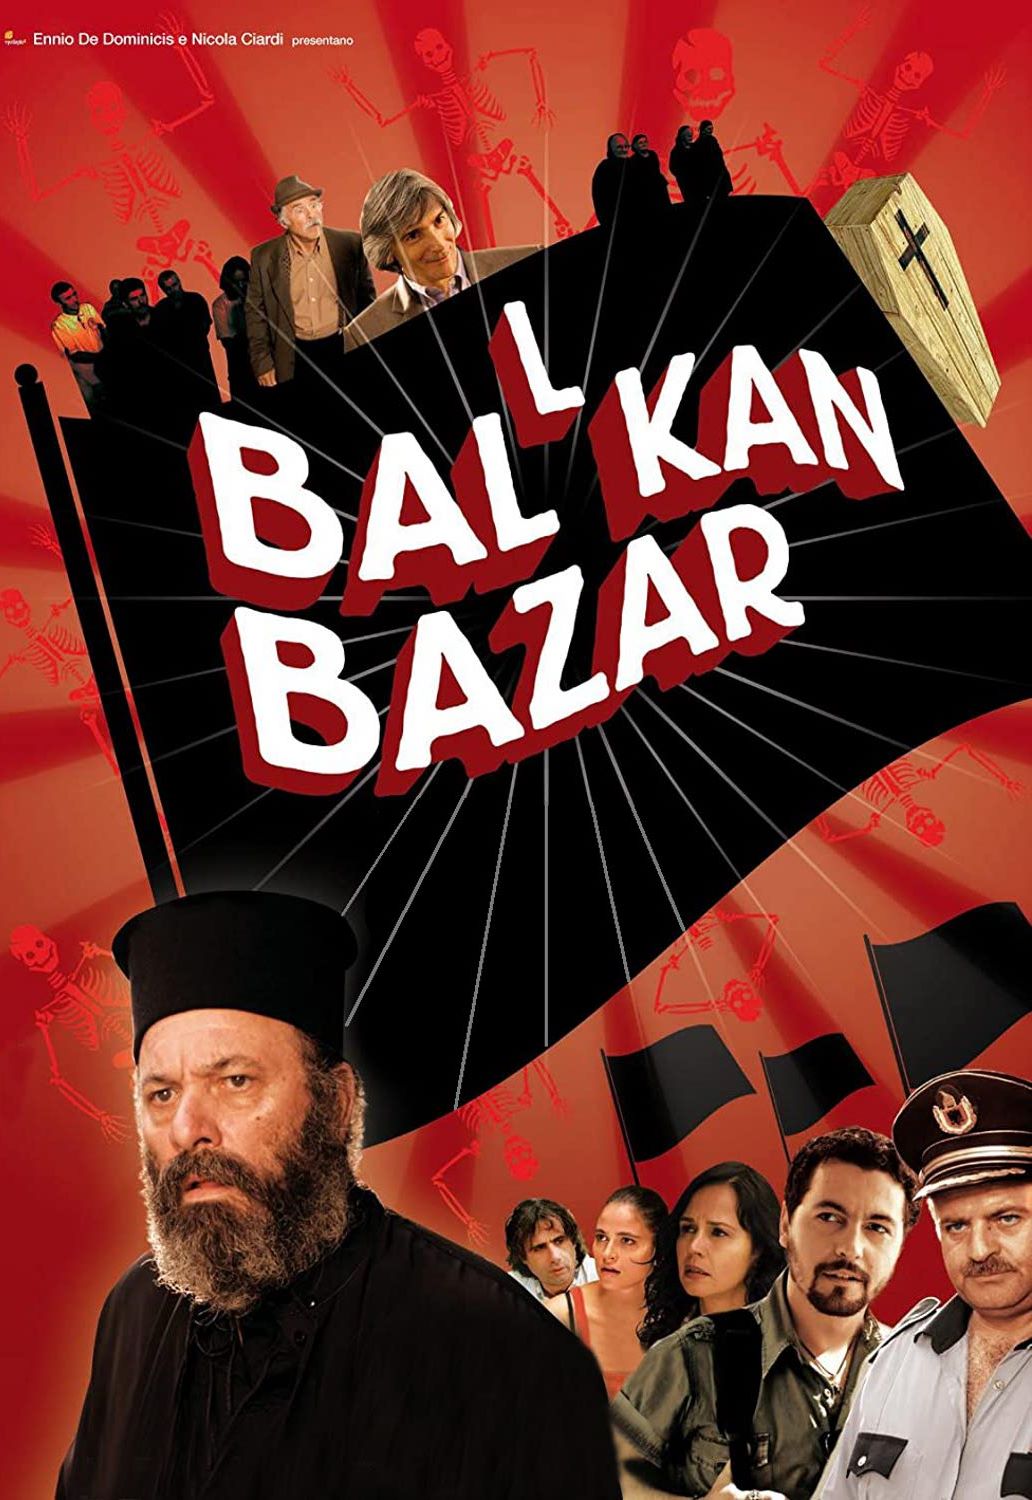 Ballkan Bazar (2011)